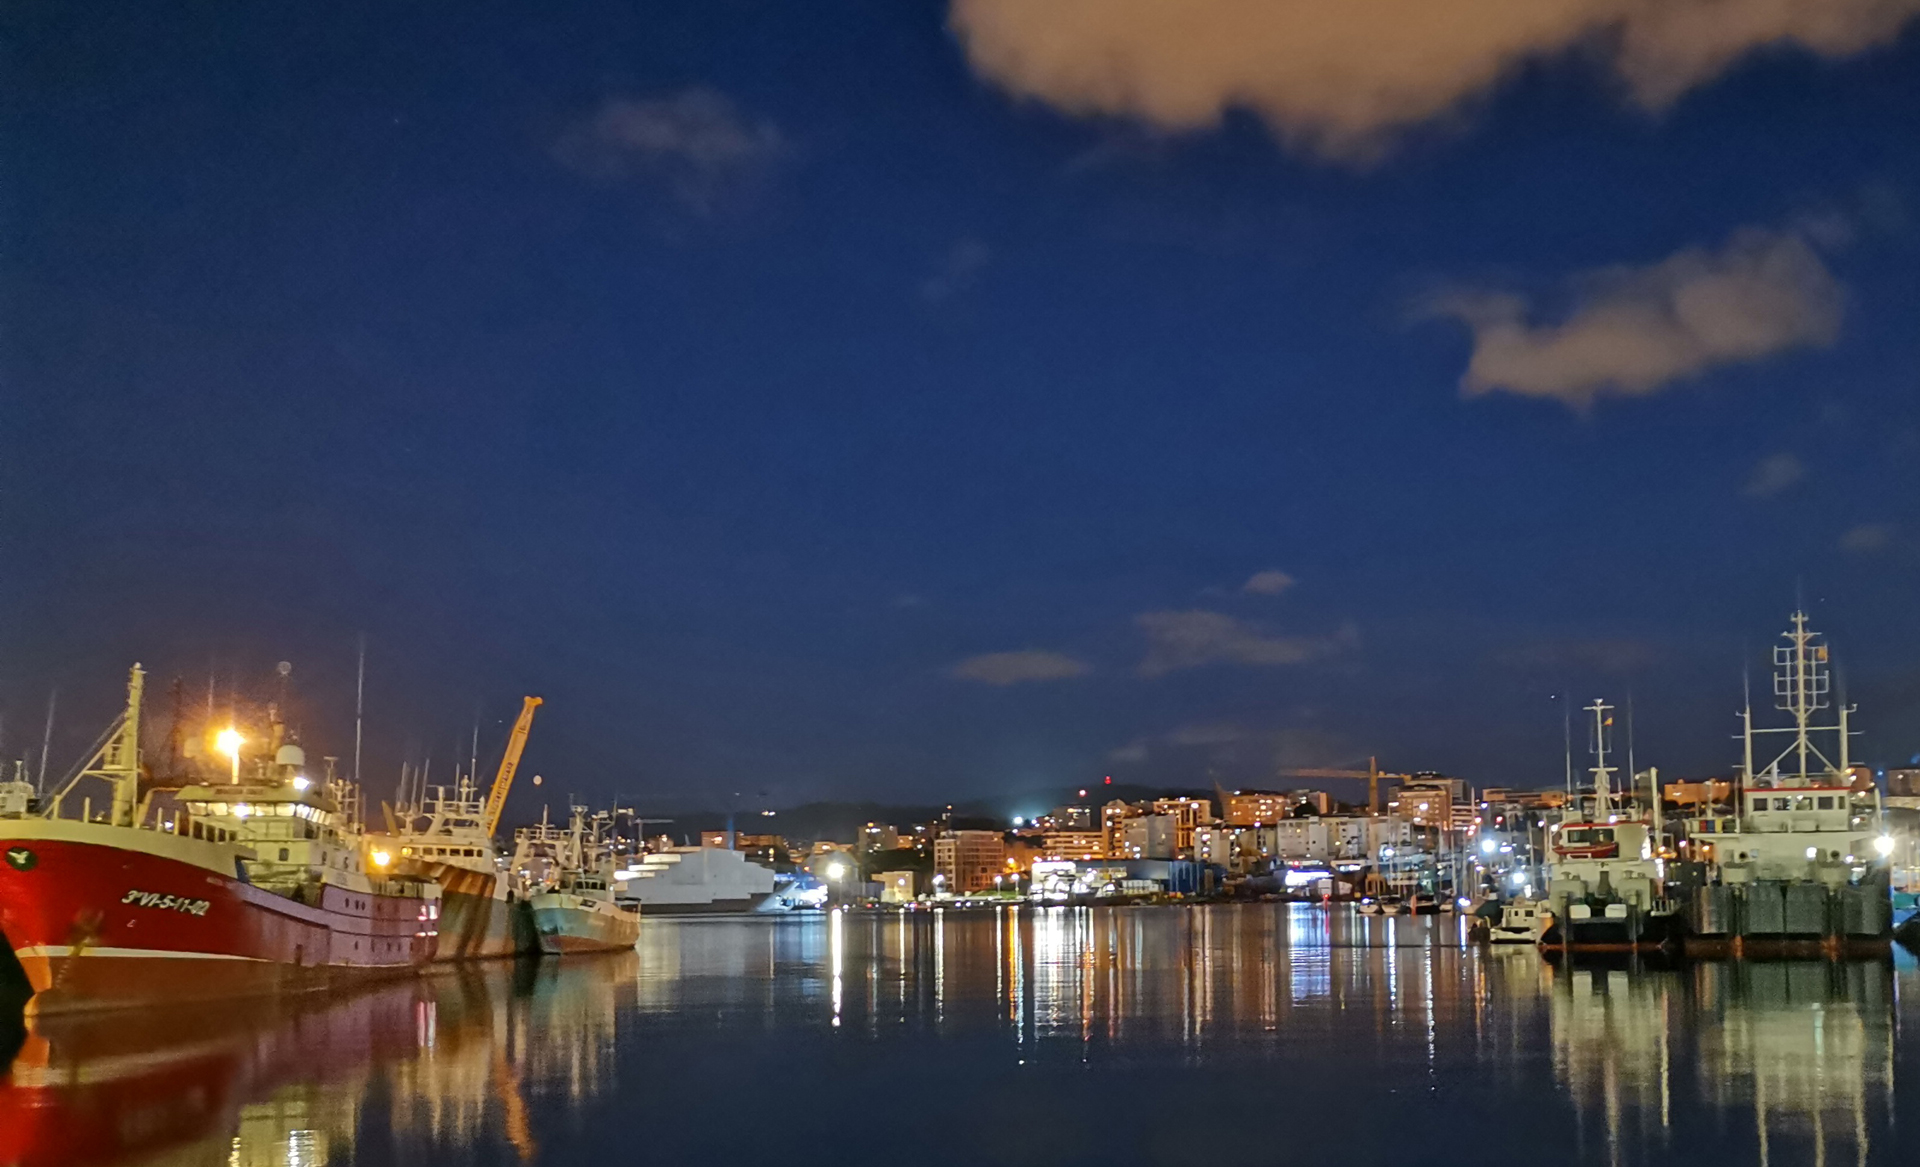 Auch nachts taghell erleuchtet, der Hafen von Vigo in Spanien. Bild: Fabian Löhr